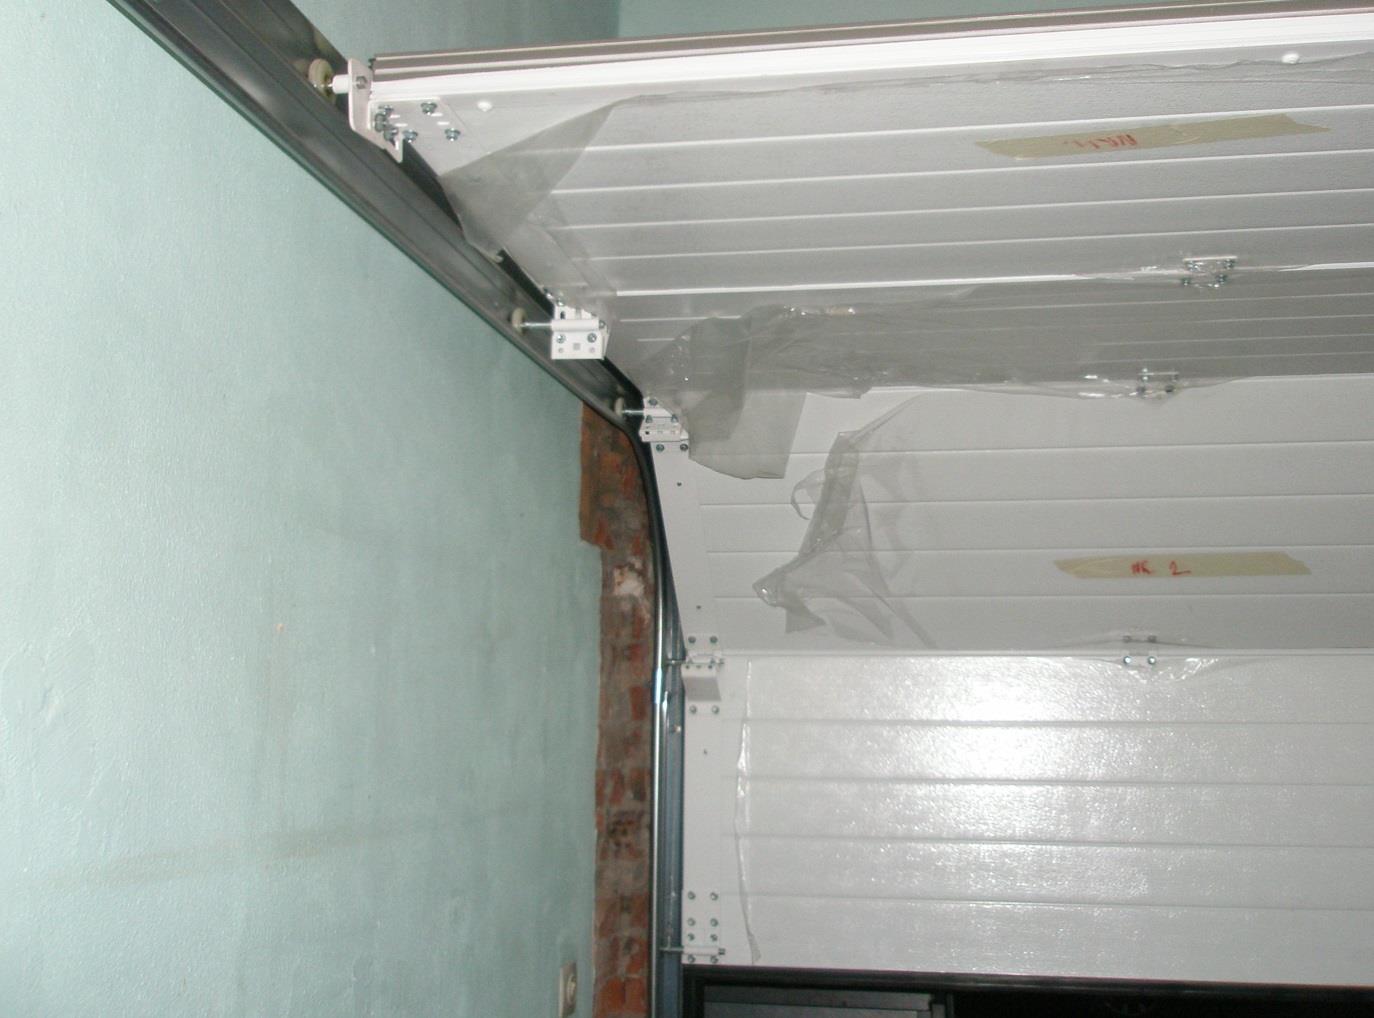 2.2. Horizontale rails De horizontale rails ondersteunen de sectionale garagepoort in open toestand. Een horizontale rail bestaat uit twee op elkaar bevestigde looprails (zie Figuur 15).